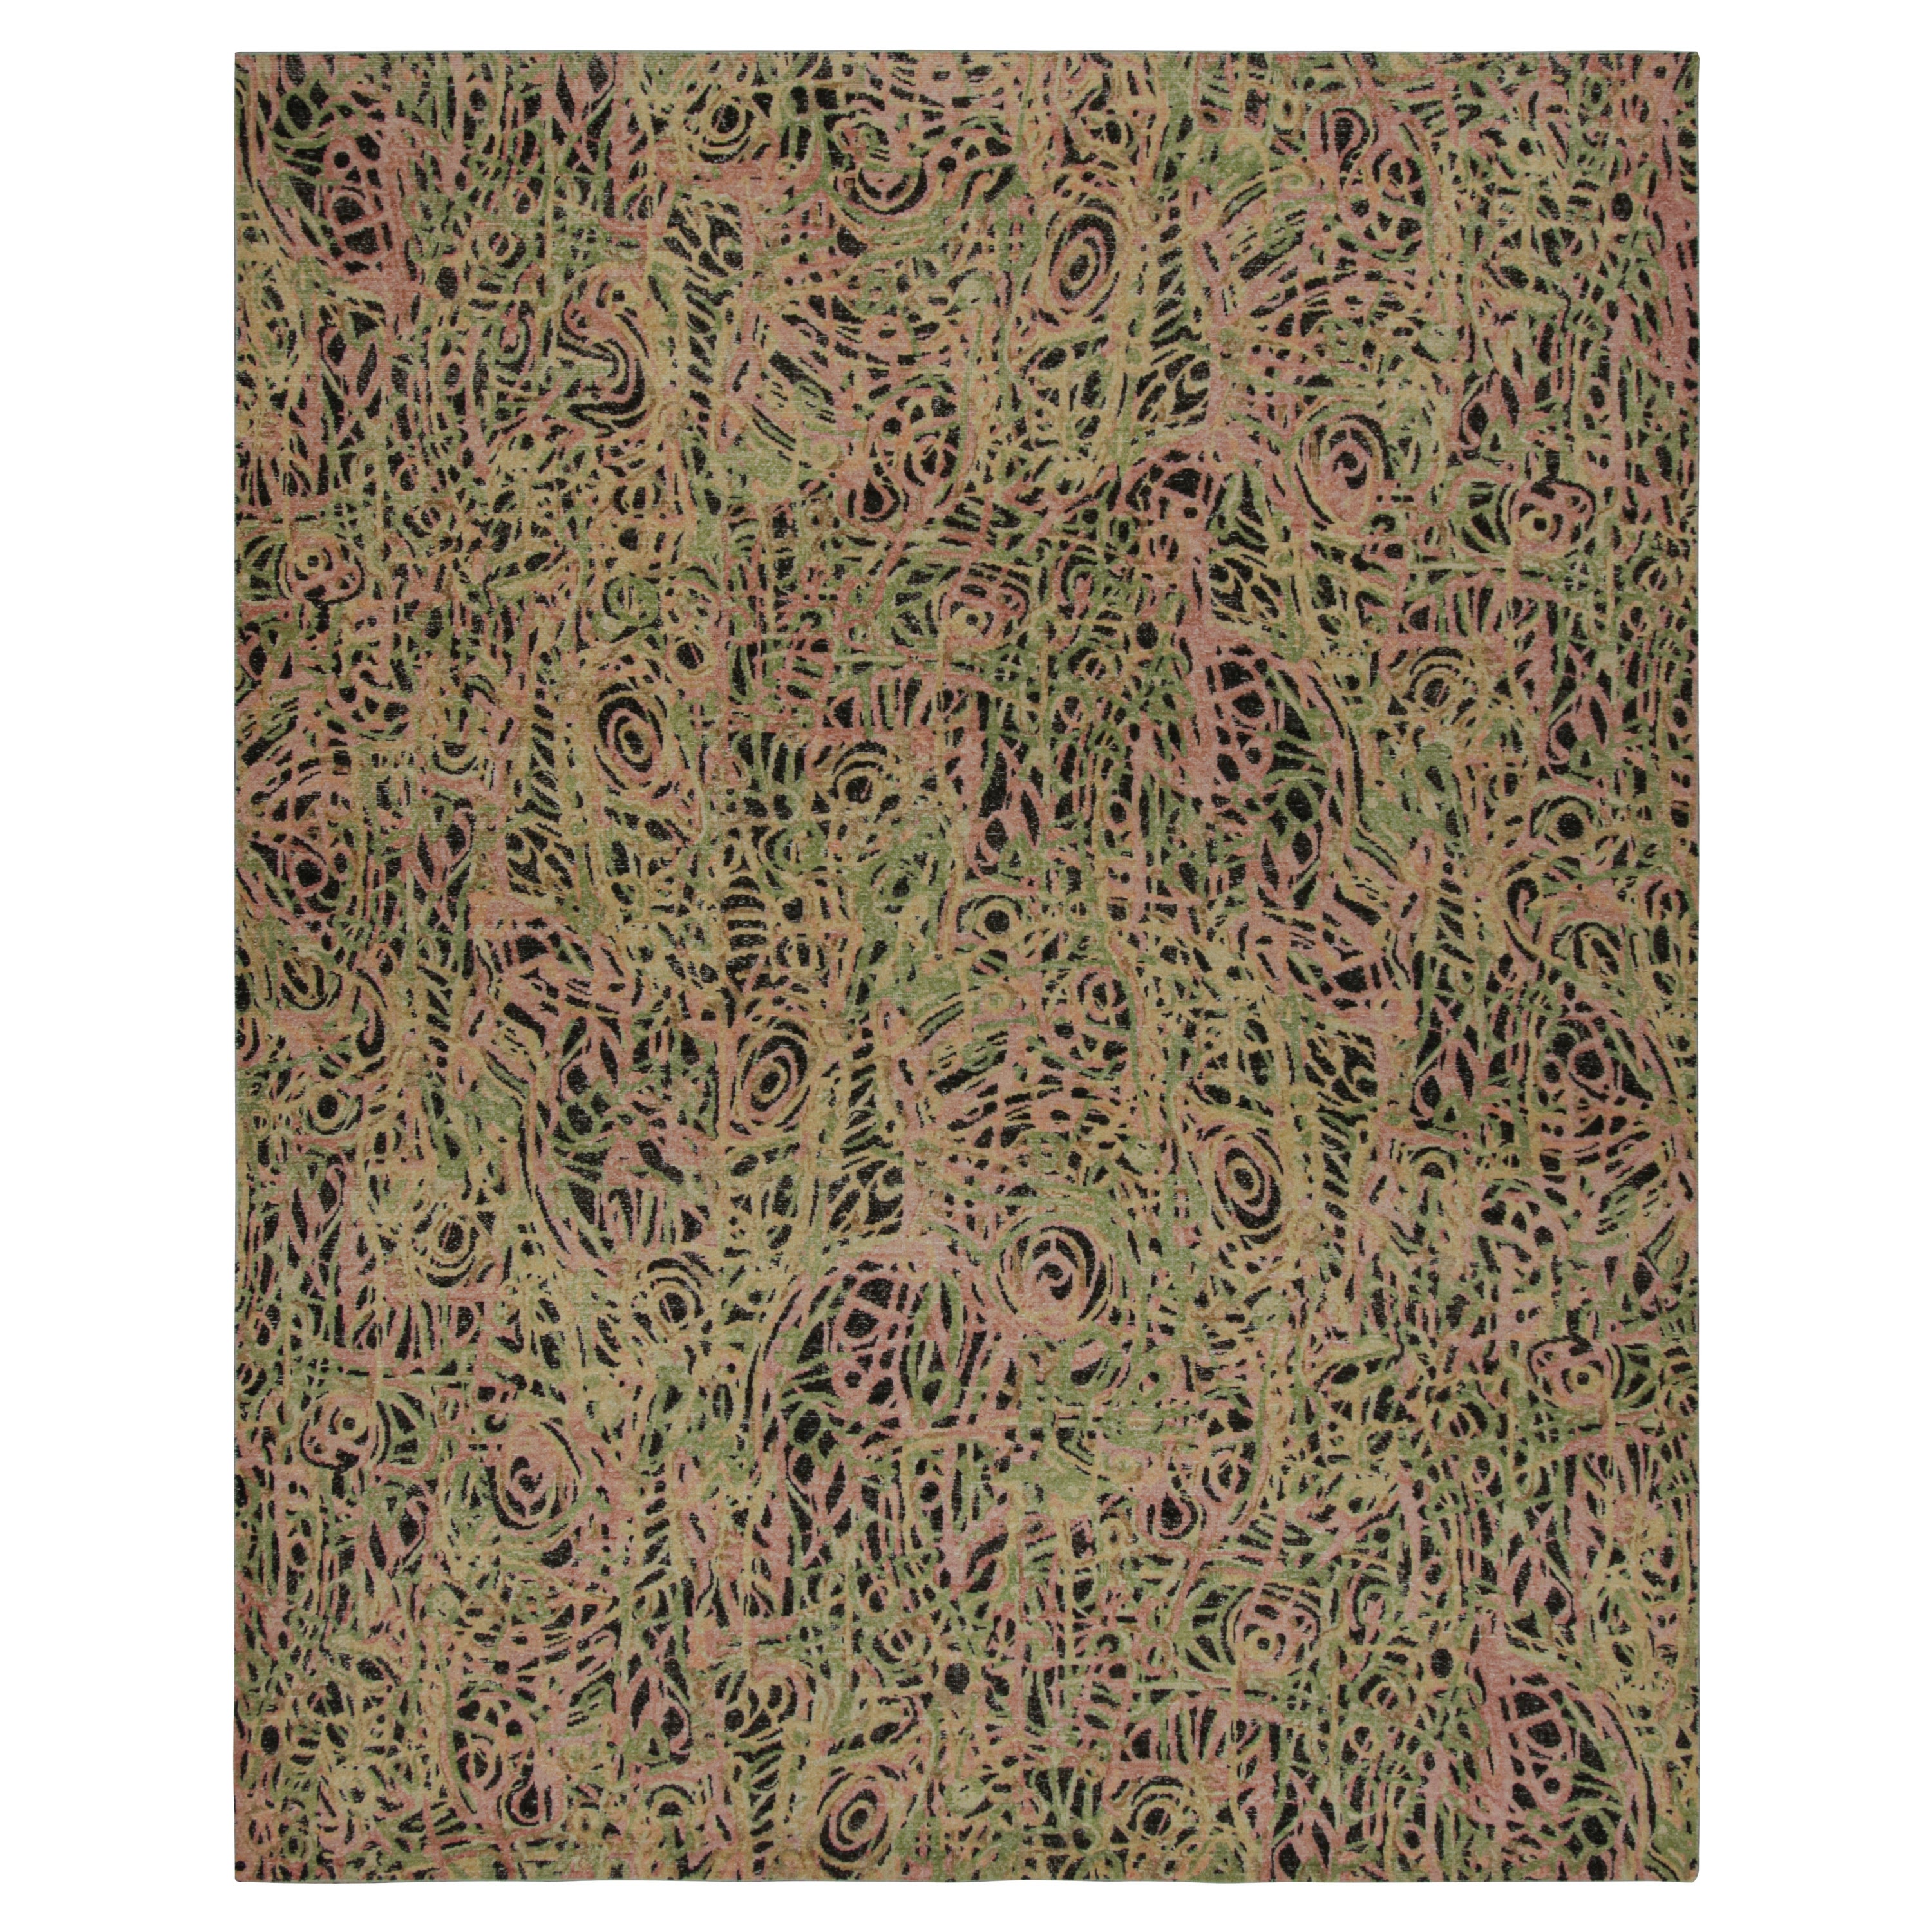 Abstrakt-expressionistischer Teppich von Rug & Kilim mit durchgehendem geometrischem Muster